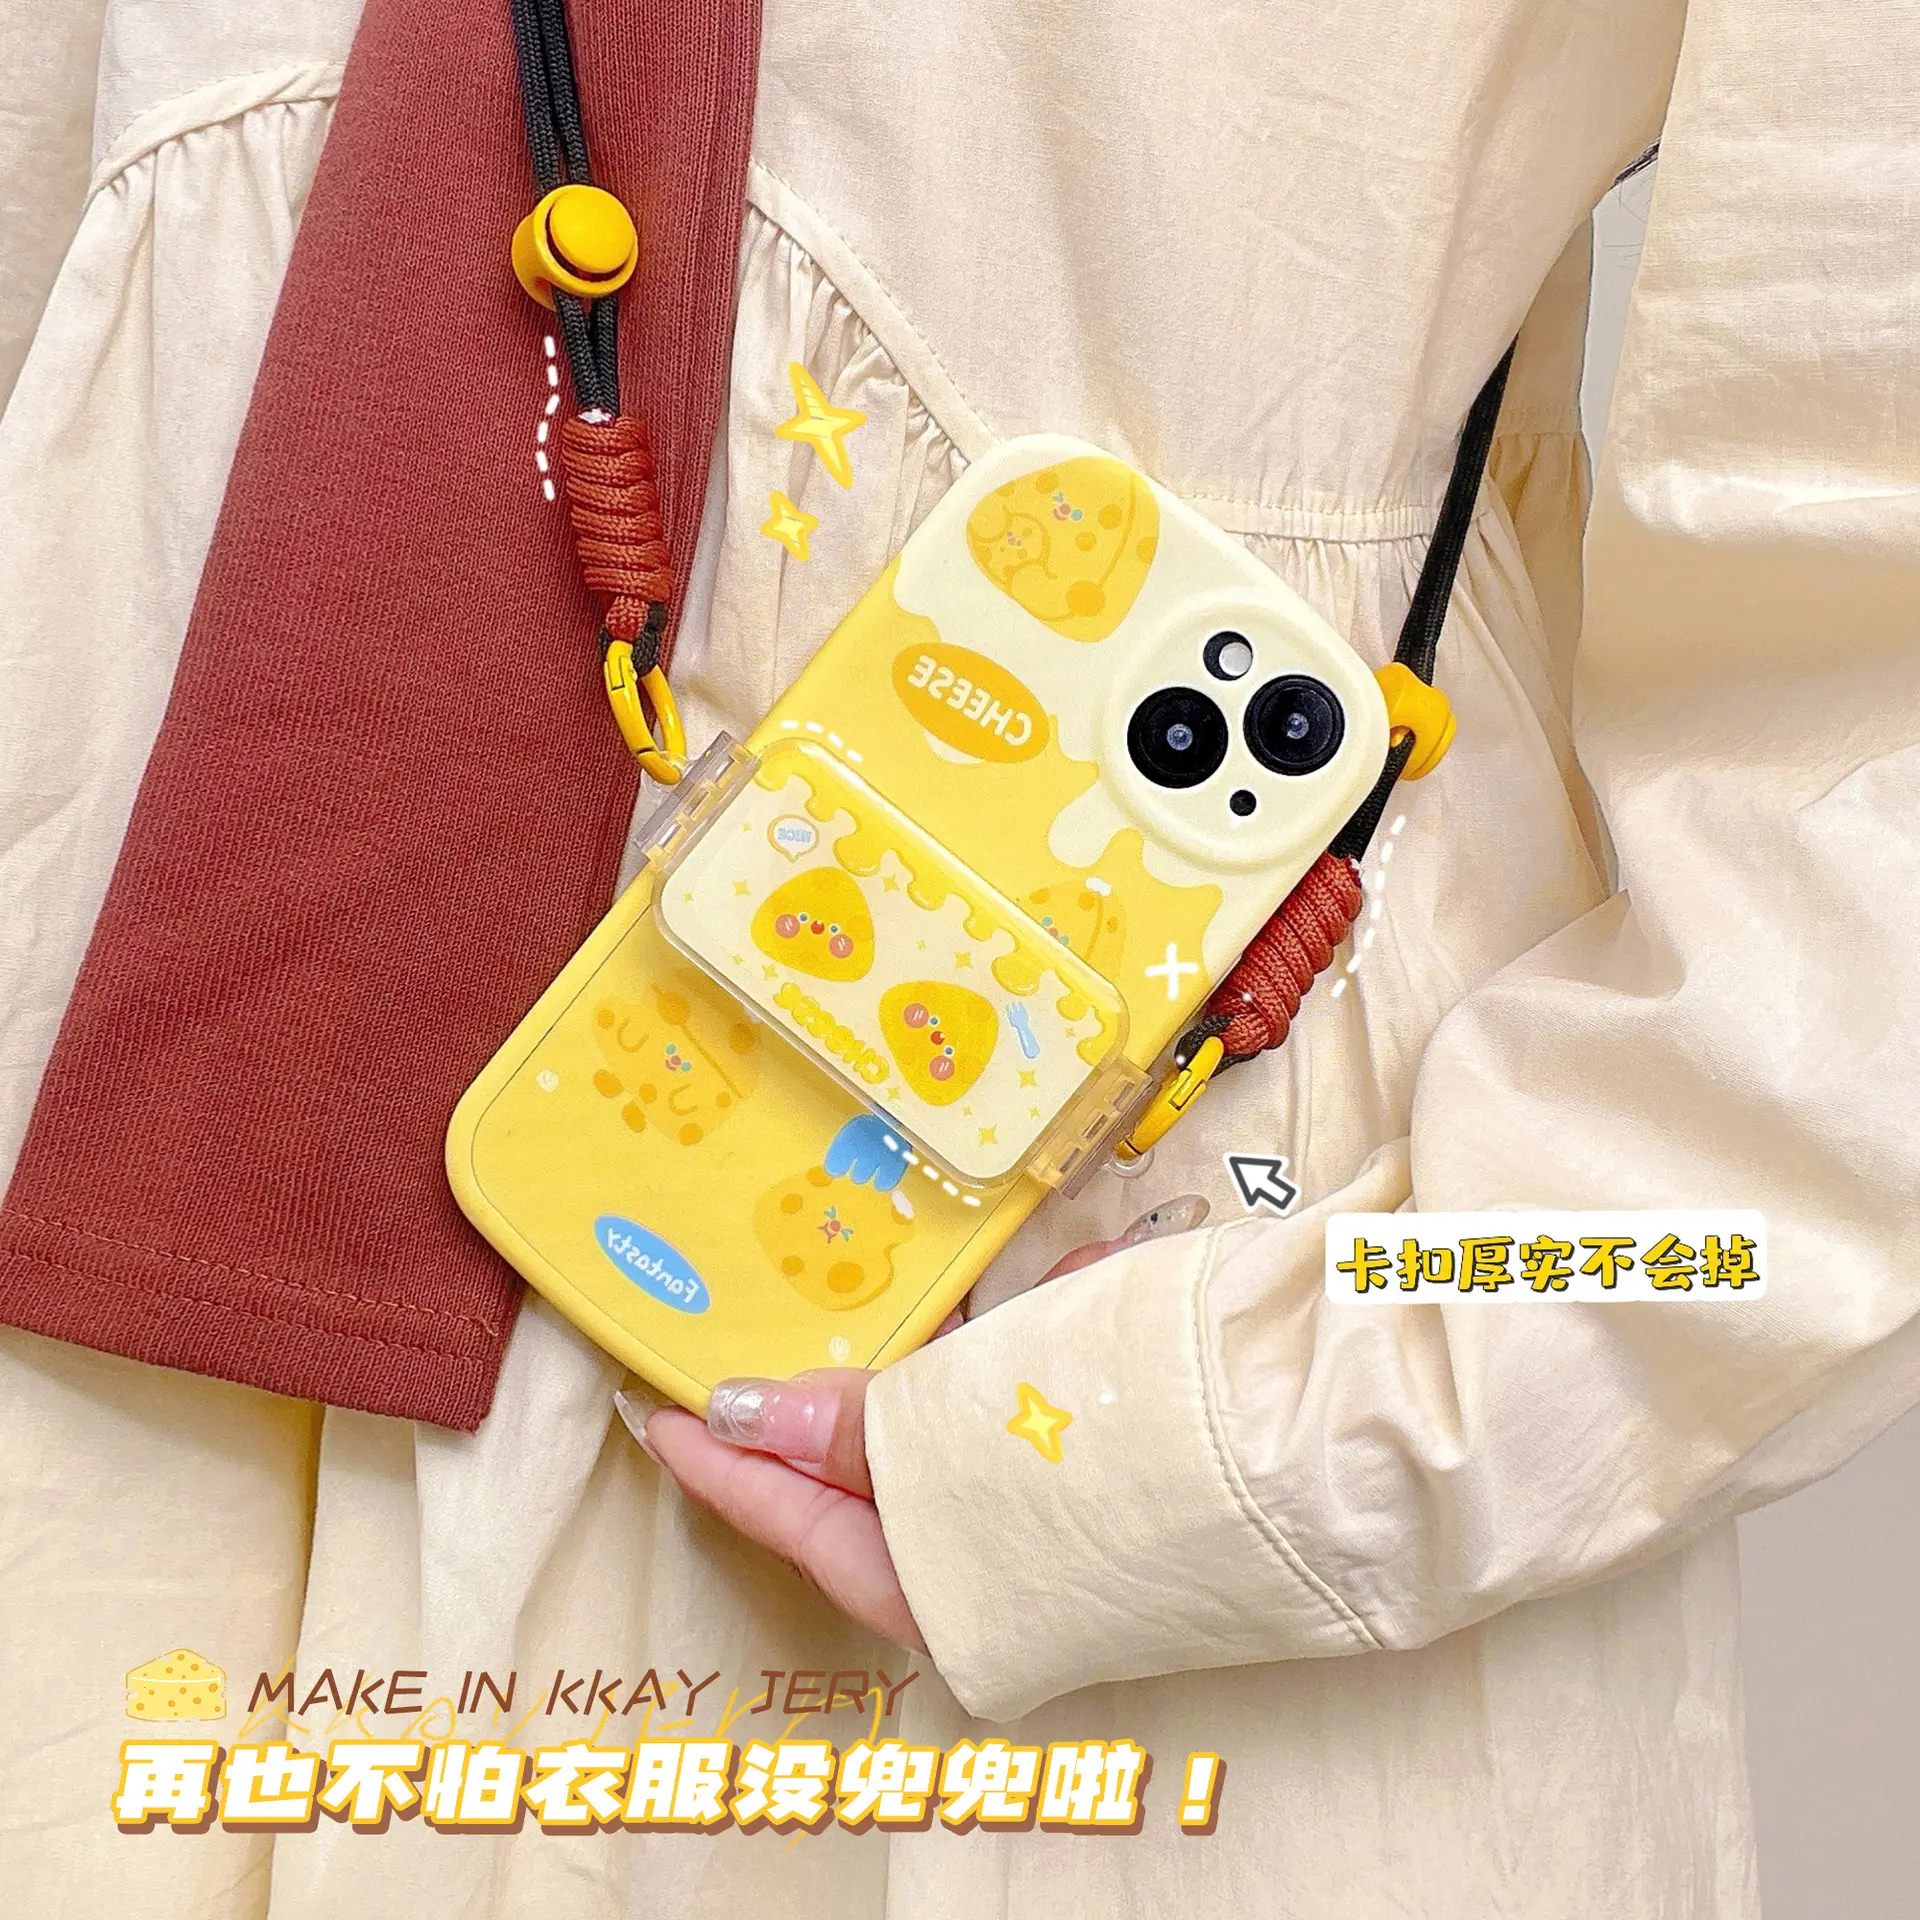 Peynir tarzı sevimli karikatür tasarım phonecase klip omuz sapan telefon kordon Crossbody cep telefonu askısı tutucu ile ayrılabilir